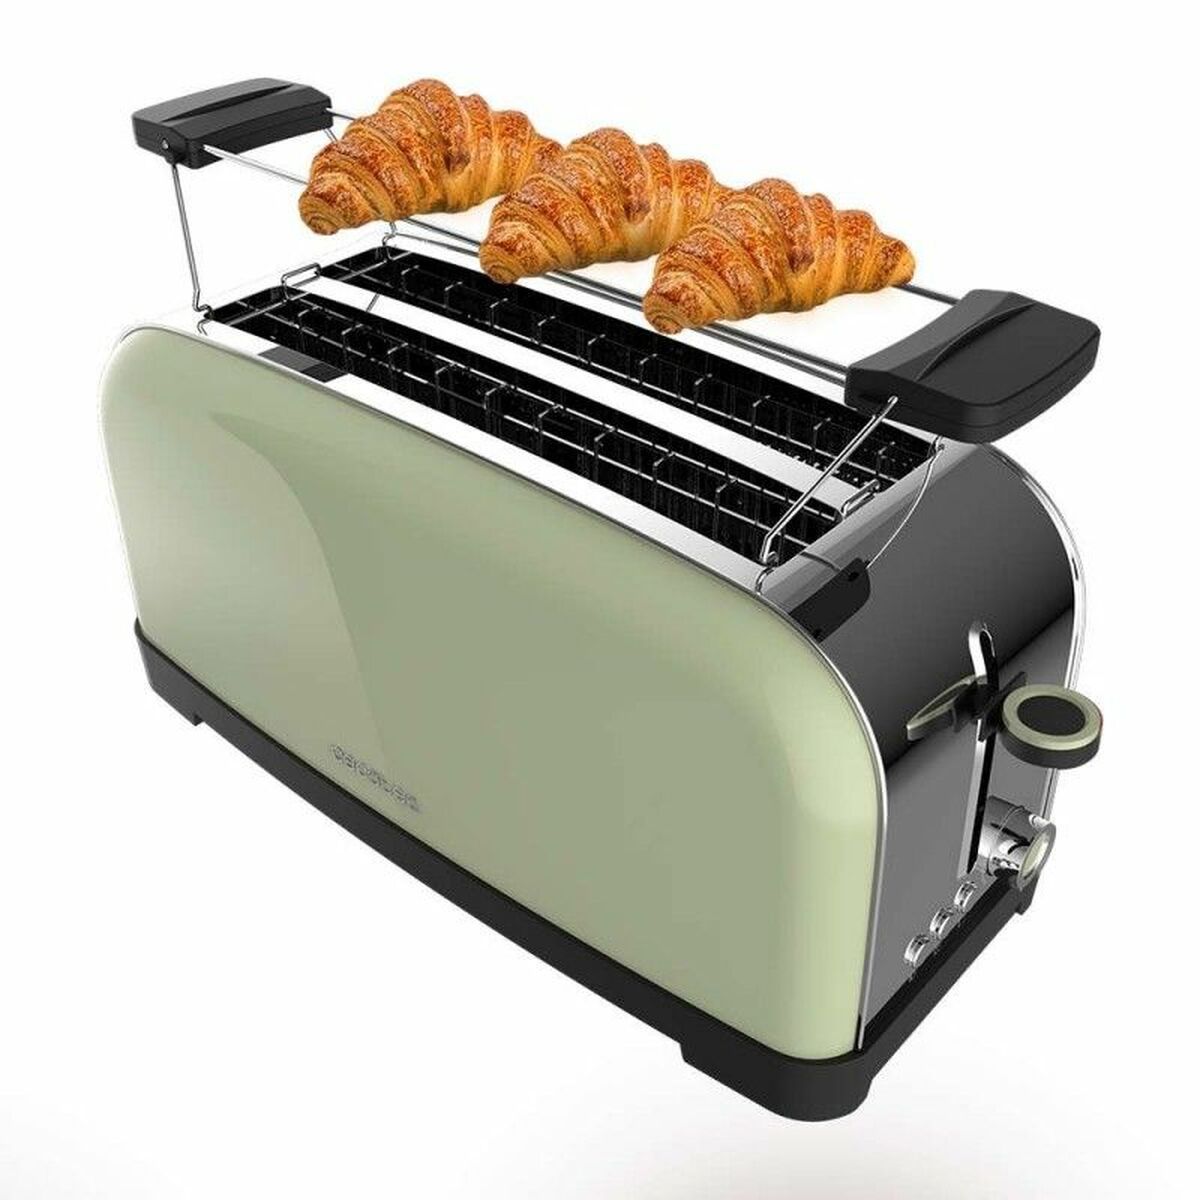 Toaster Cecotec Toastin' time 1500 1500 W